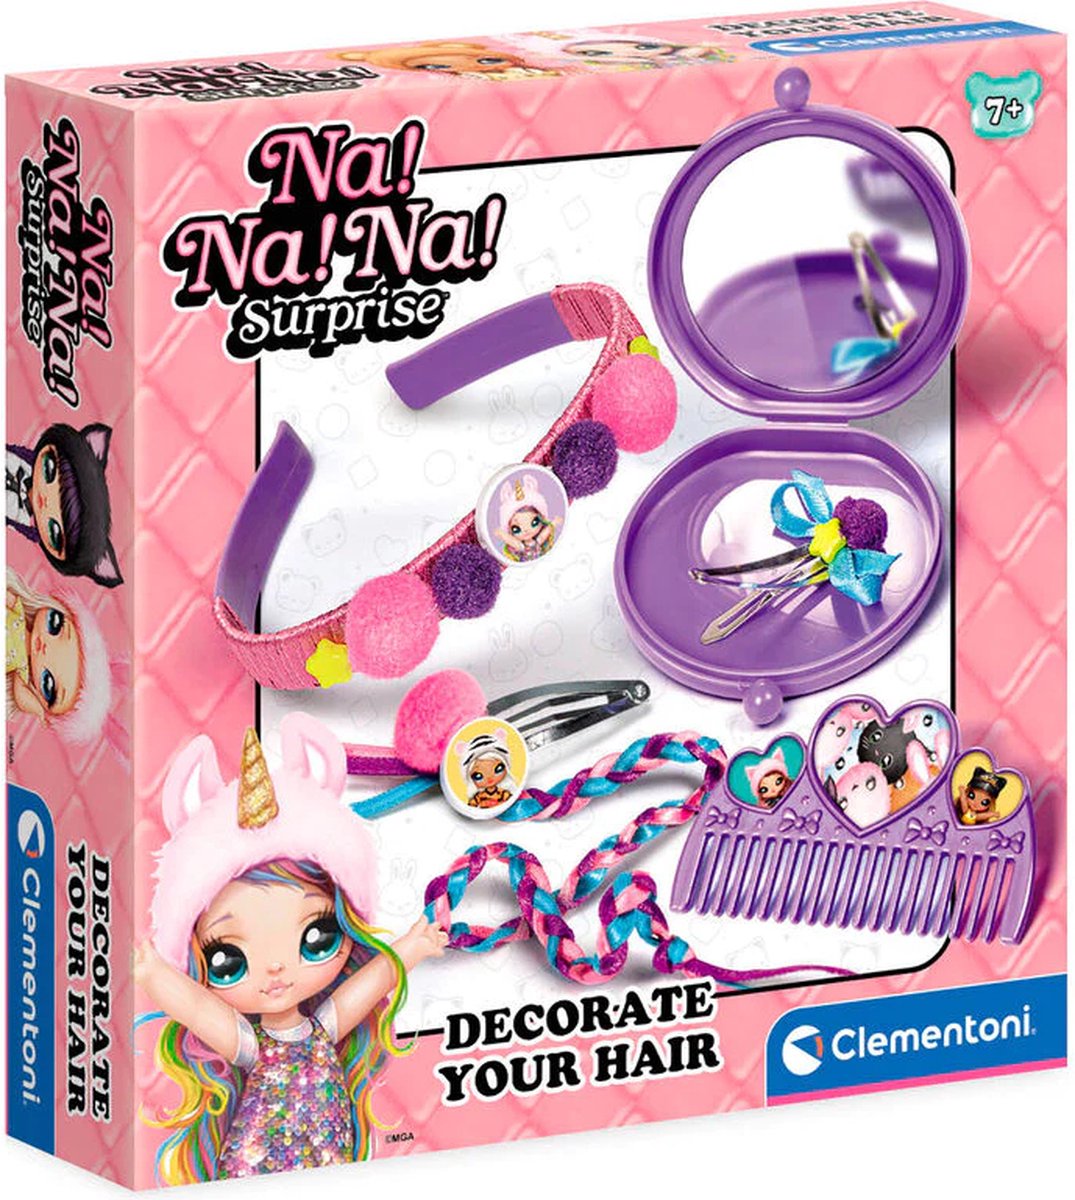 Na!Na!Na Suprise -Decoratie your hair - Haar decoratie - 7 +